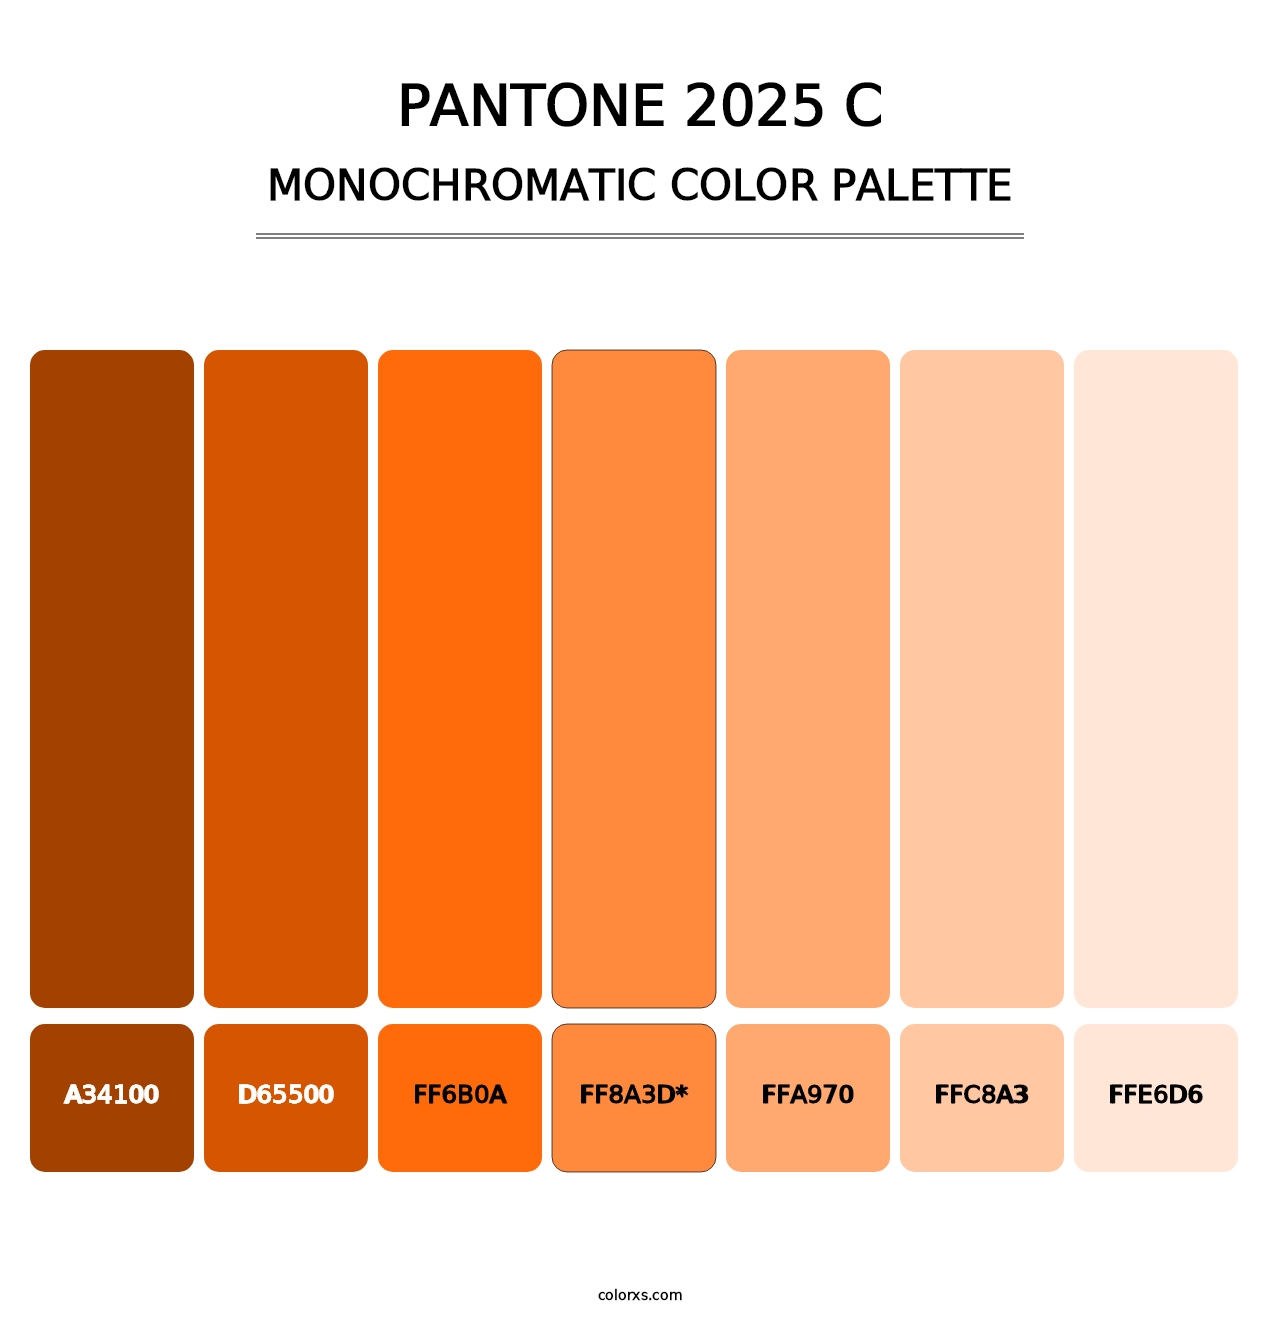 PANTONE 2025 C color palettes